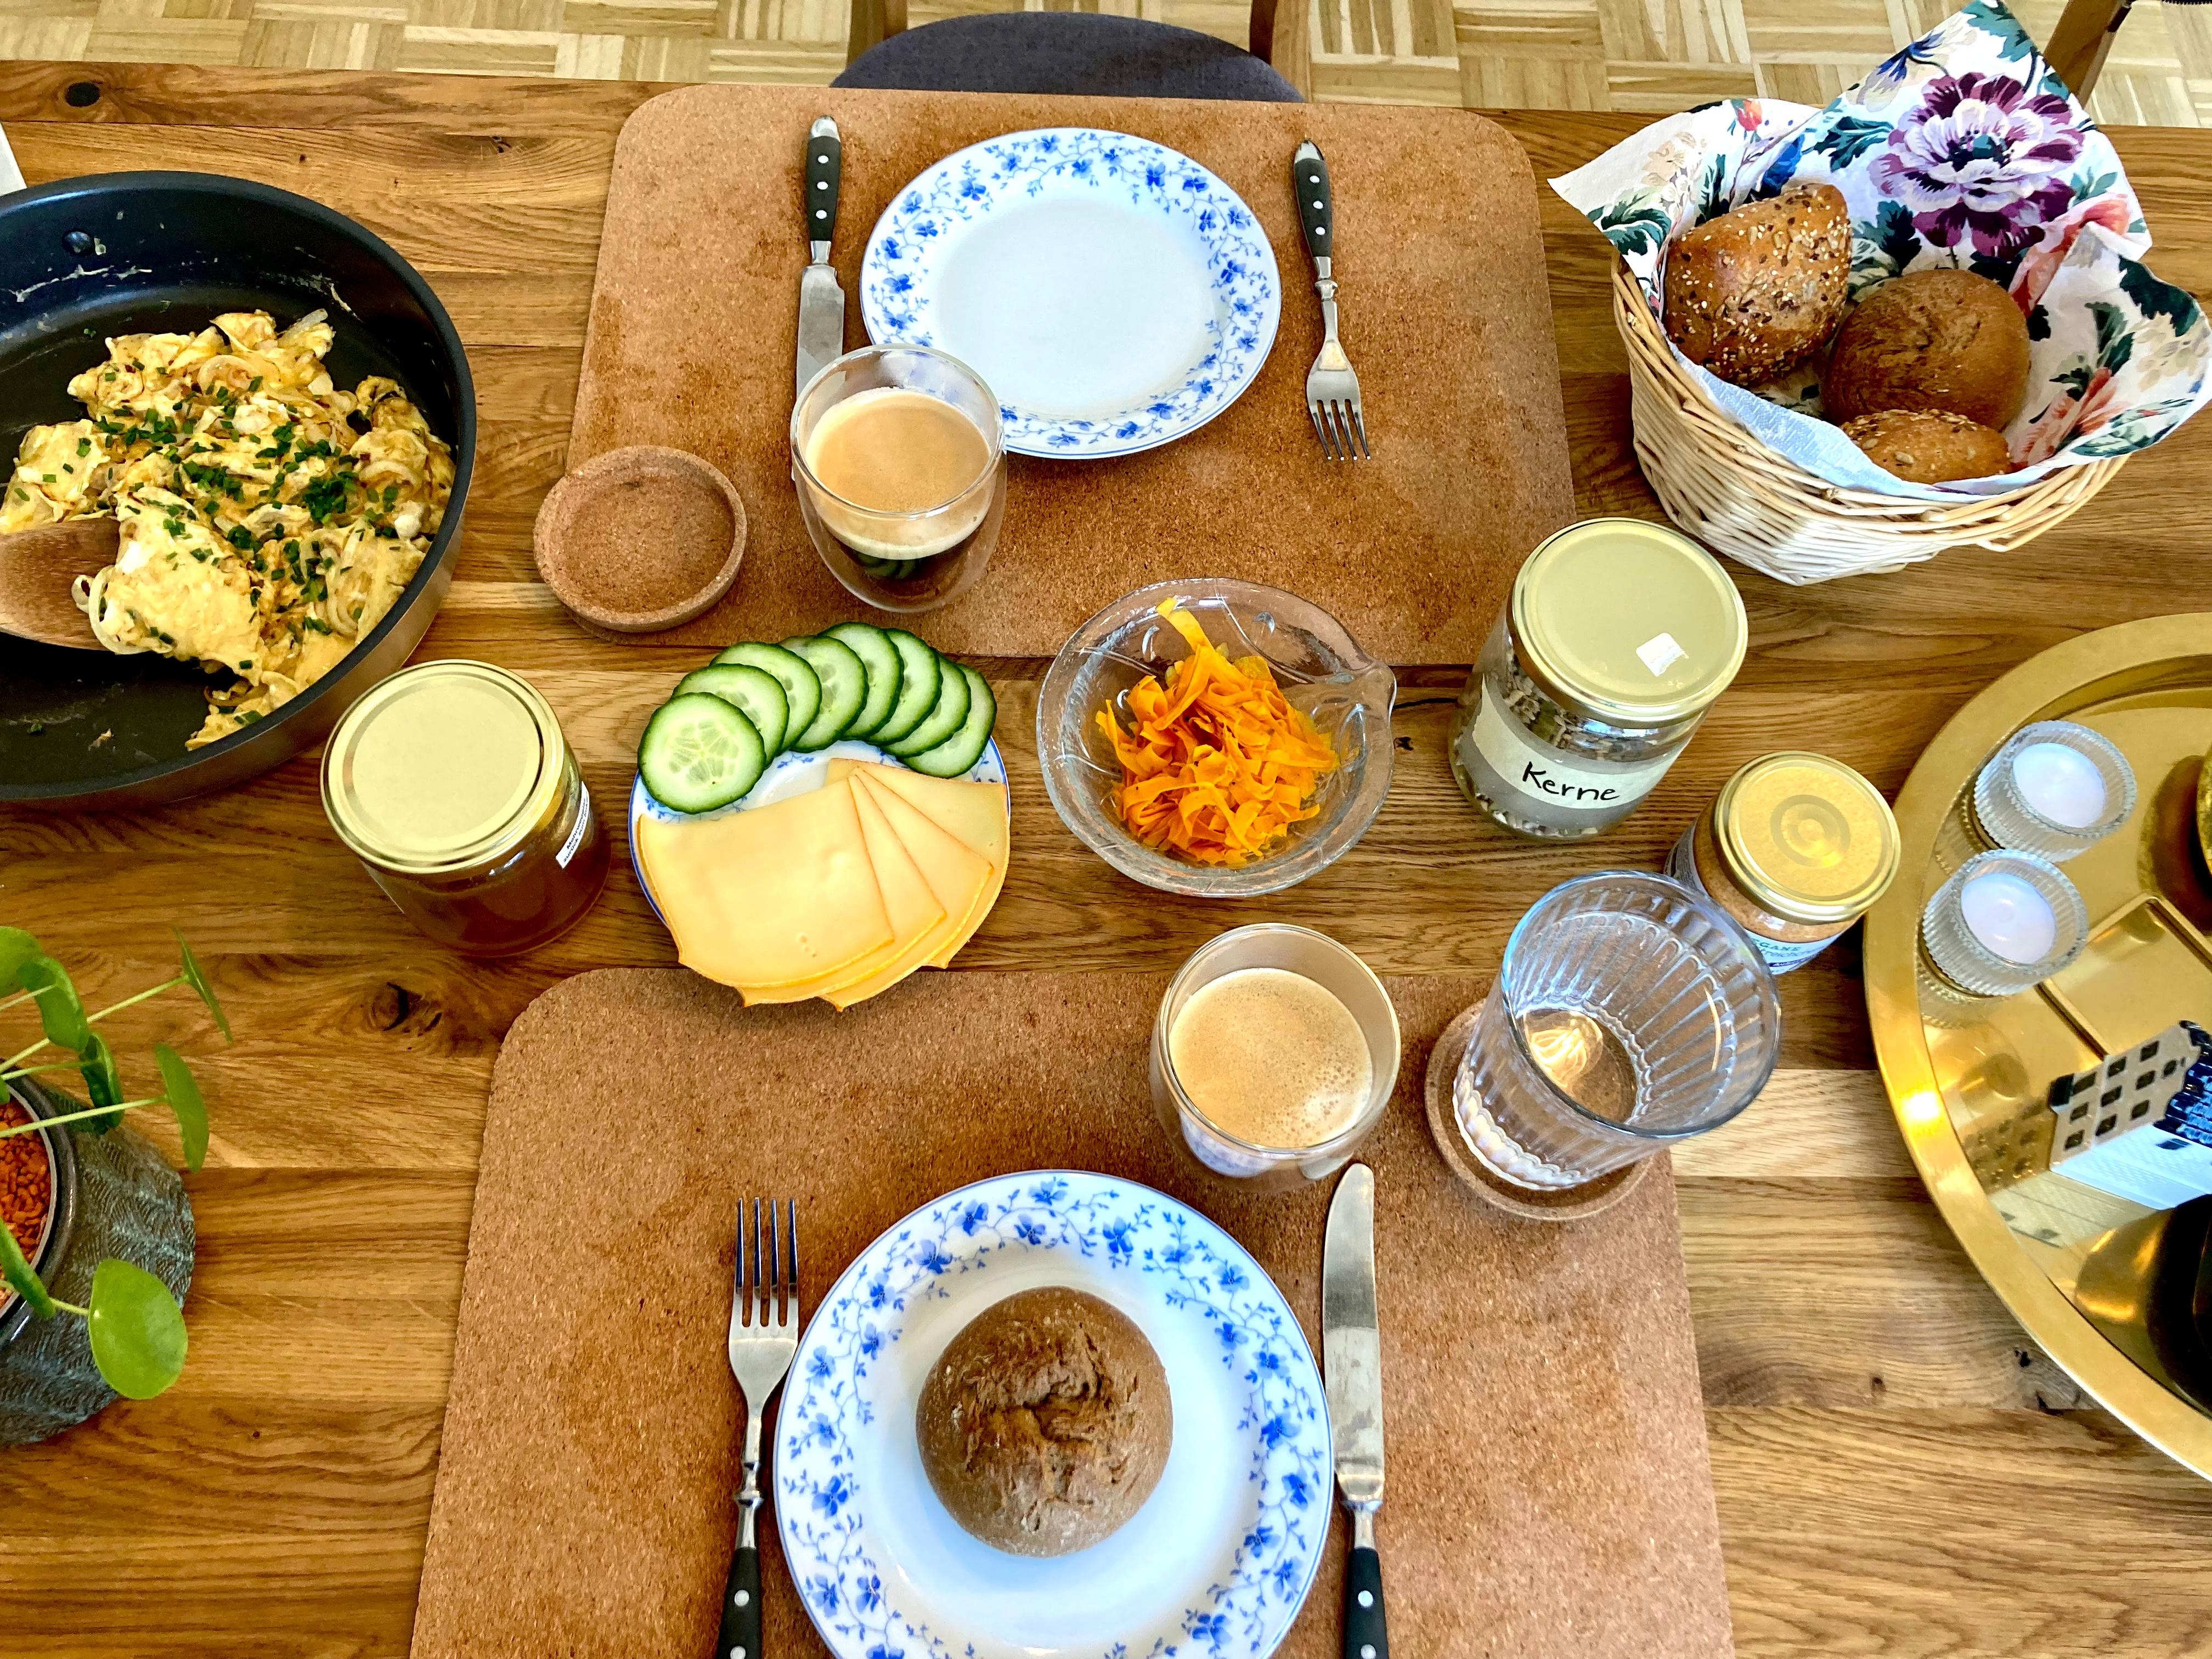 Samstag ist für Rührei und Brötchen 🌞
#frühstückstisch 
#foodchallenge 